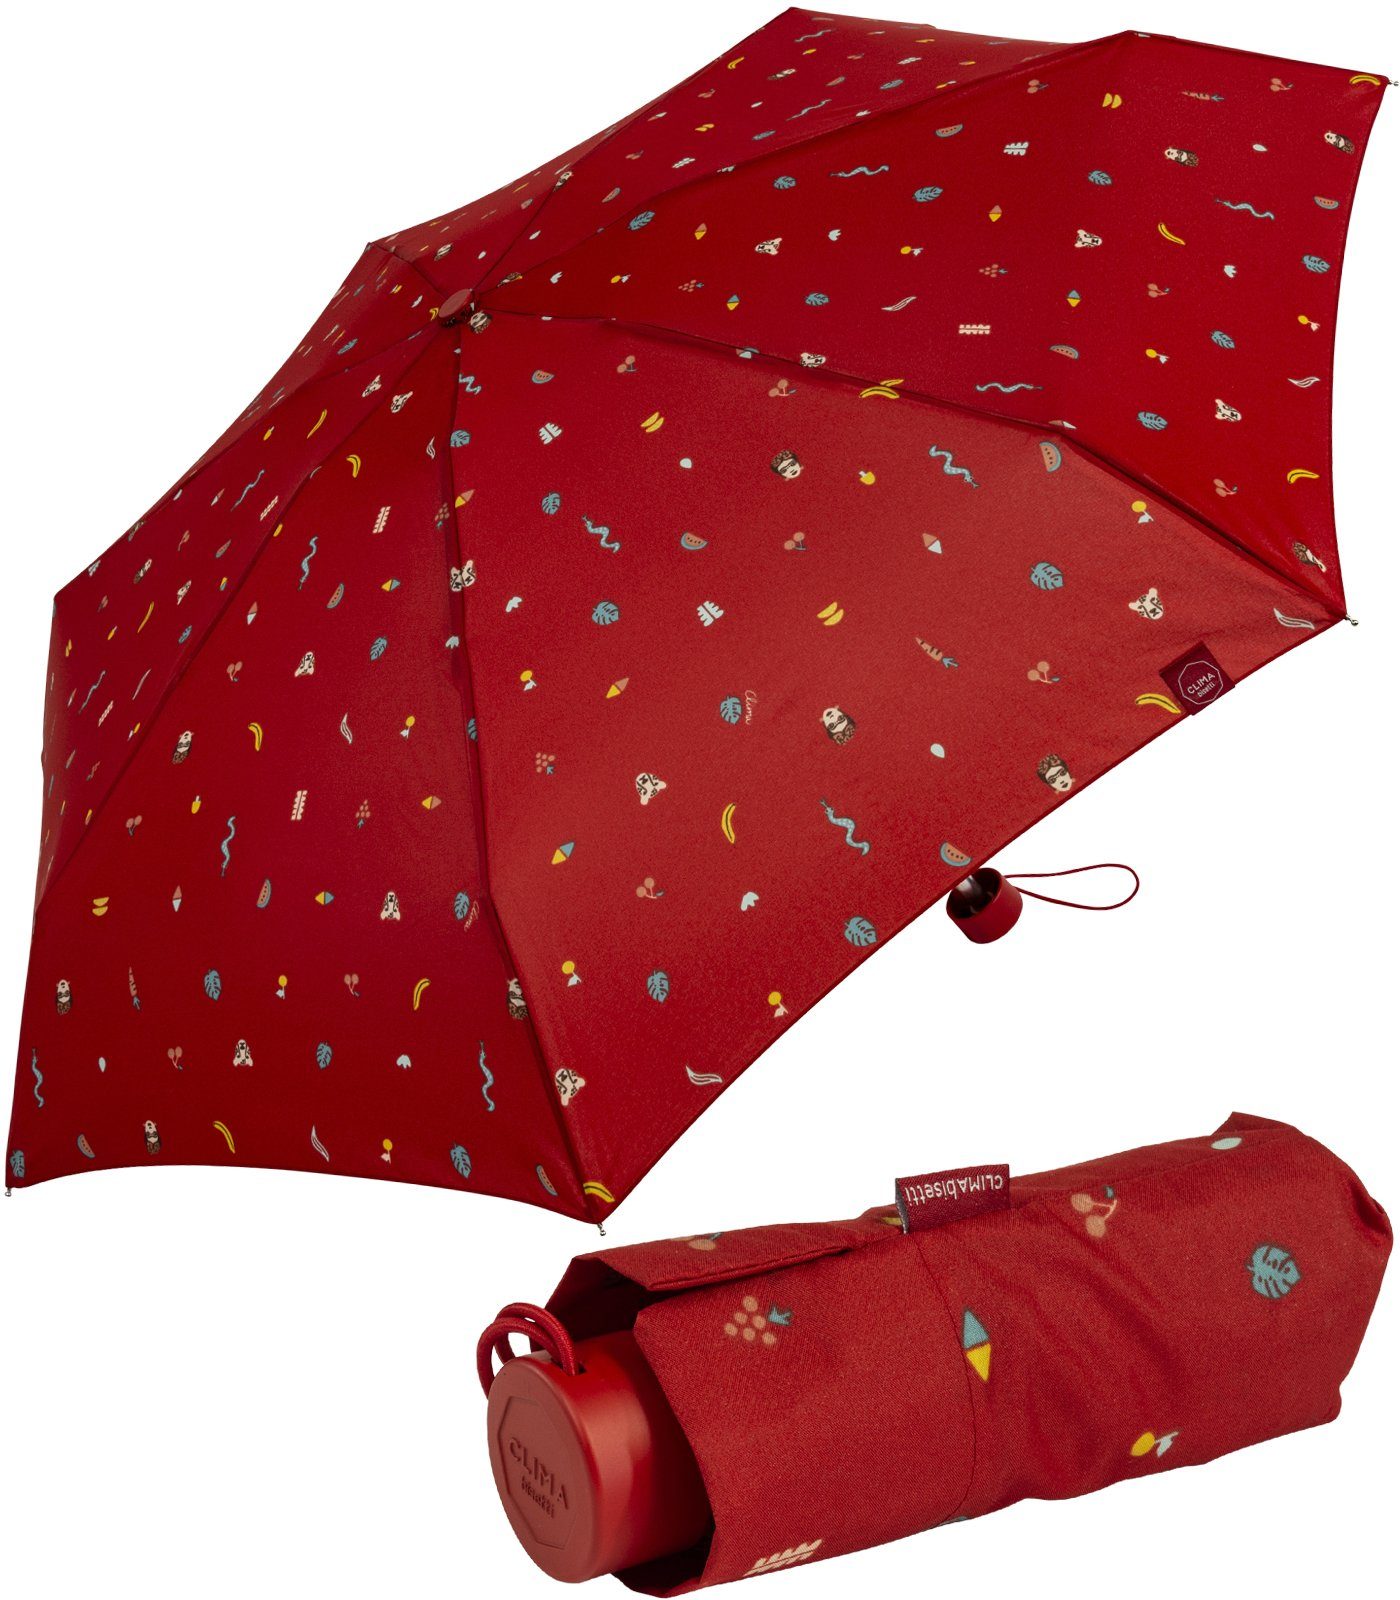 bisetti Taschenregenschirm Damen-Regenschirm, klein, stabil, kompakt, mit Handöffner, farbenfroh mit Tropen-Dschungel-Motiven - rot